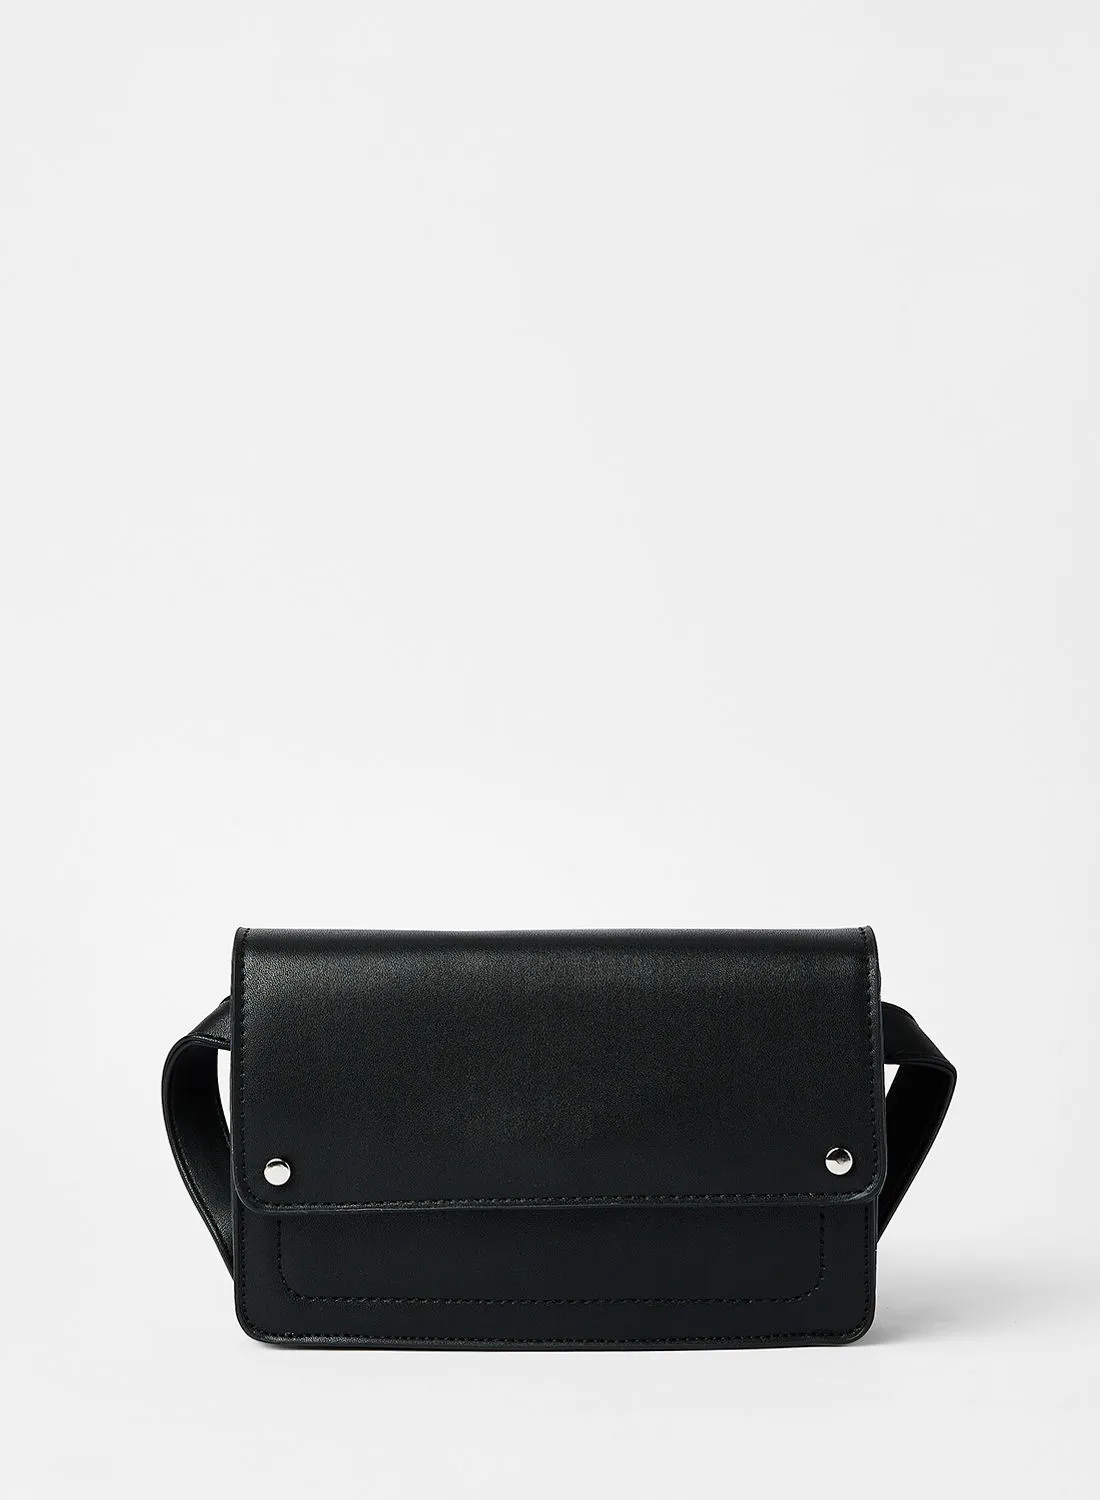 LABEL RAIL حقيبة كروس جلد صناعي سوداء